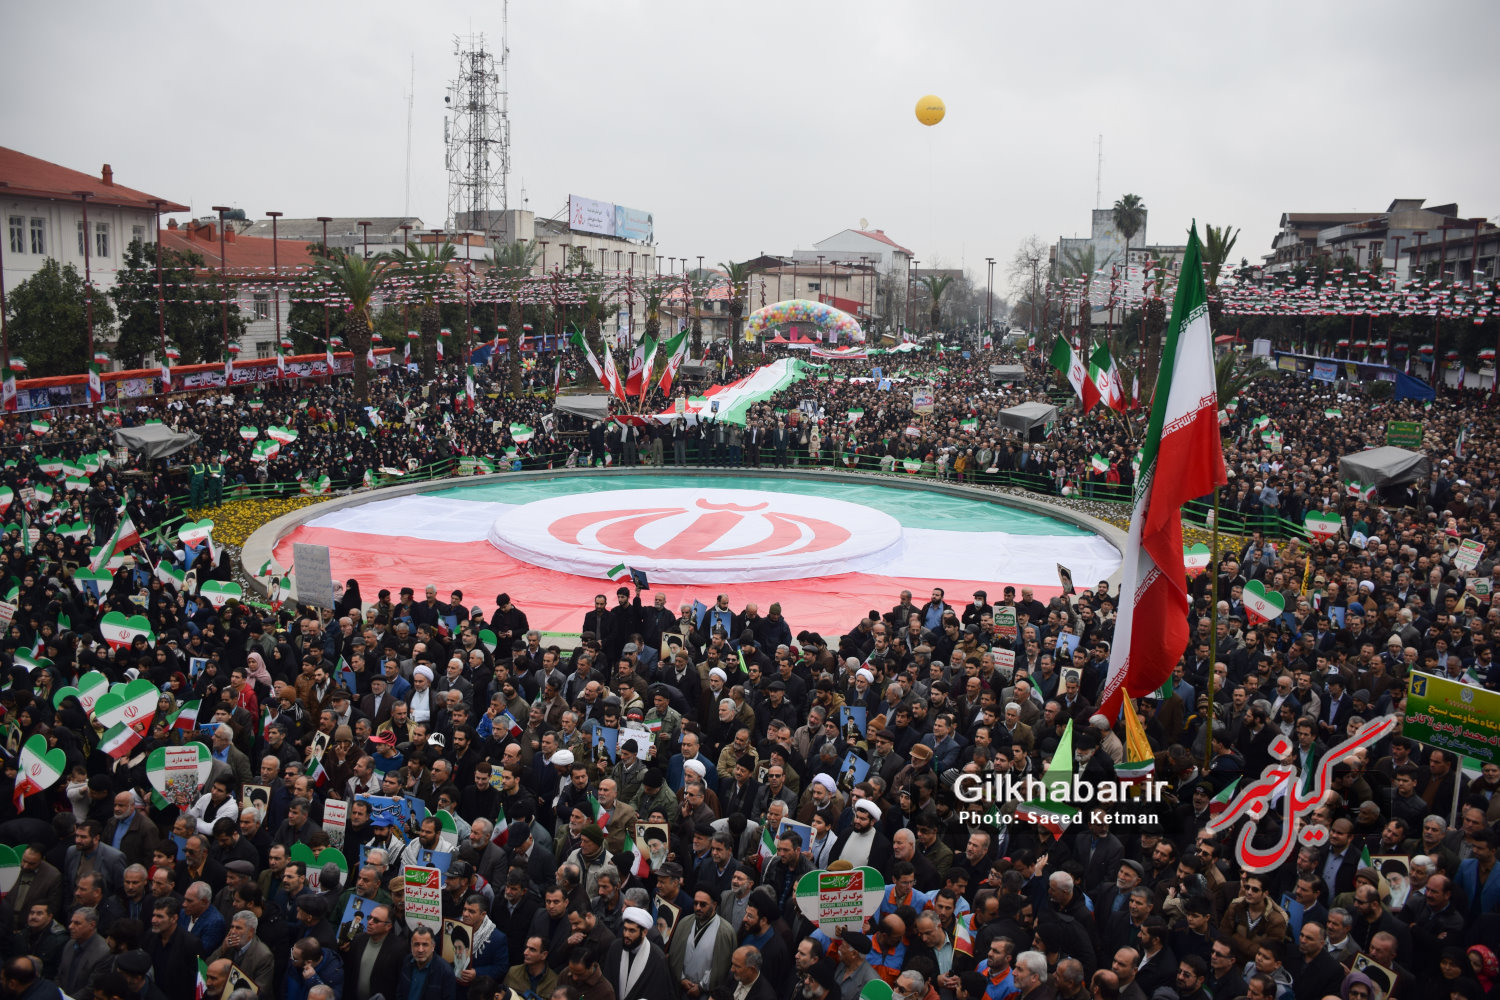 بیانیه احزاب، نهاد ها و شخصیت های مختلف استان گیلان برای حضور در مراسم راهپیمایی ۲۲ بهمن